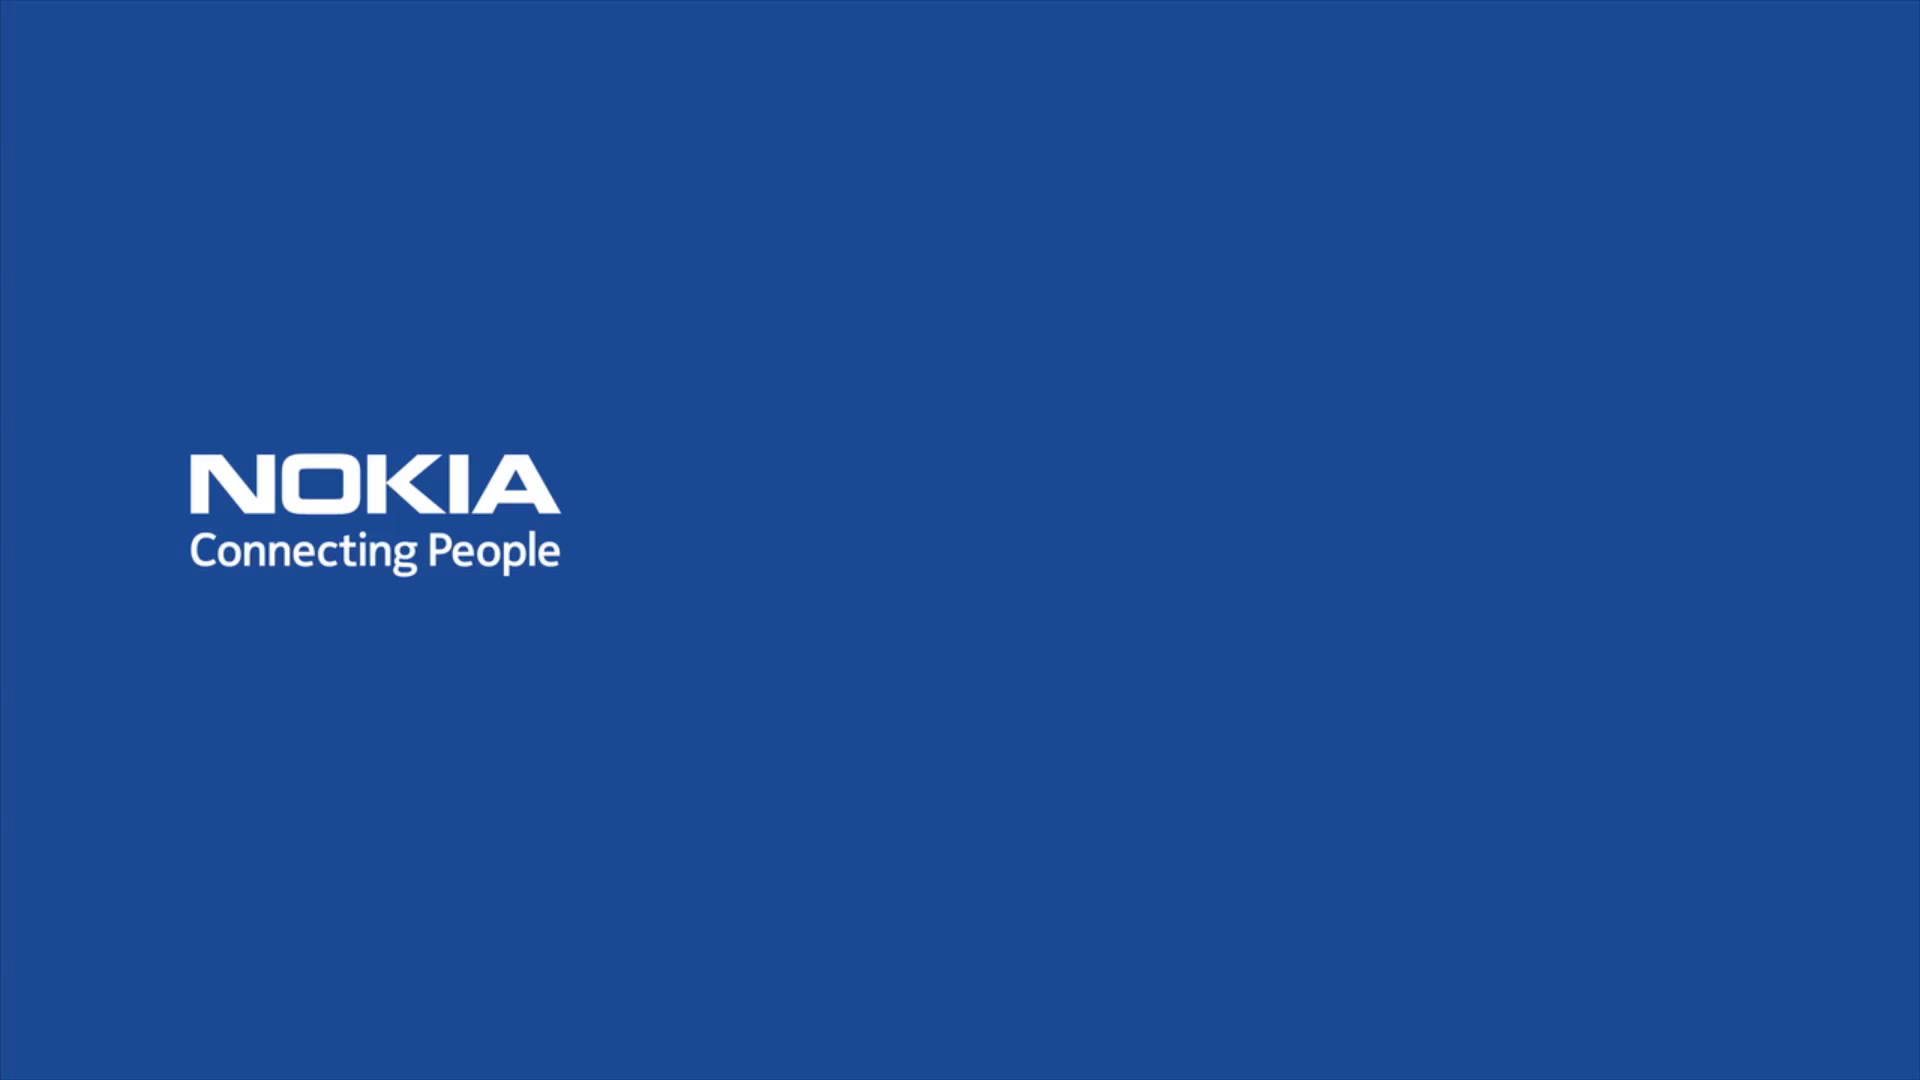 Nokia MWC 2017